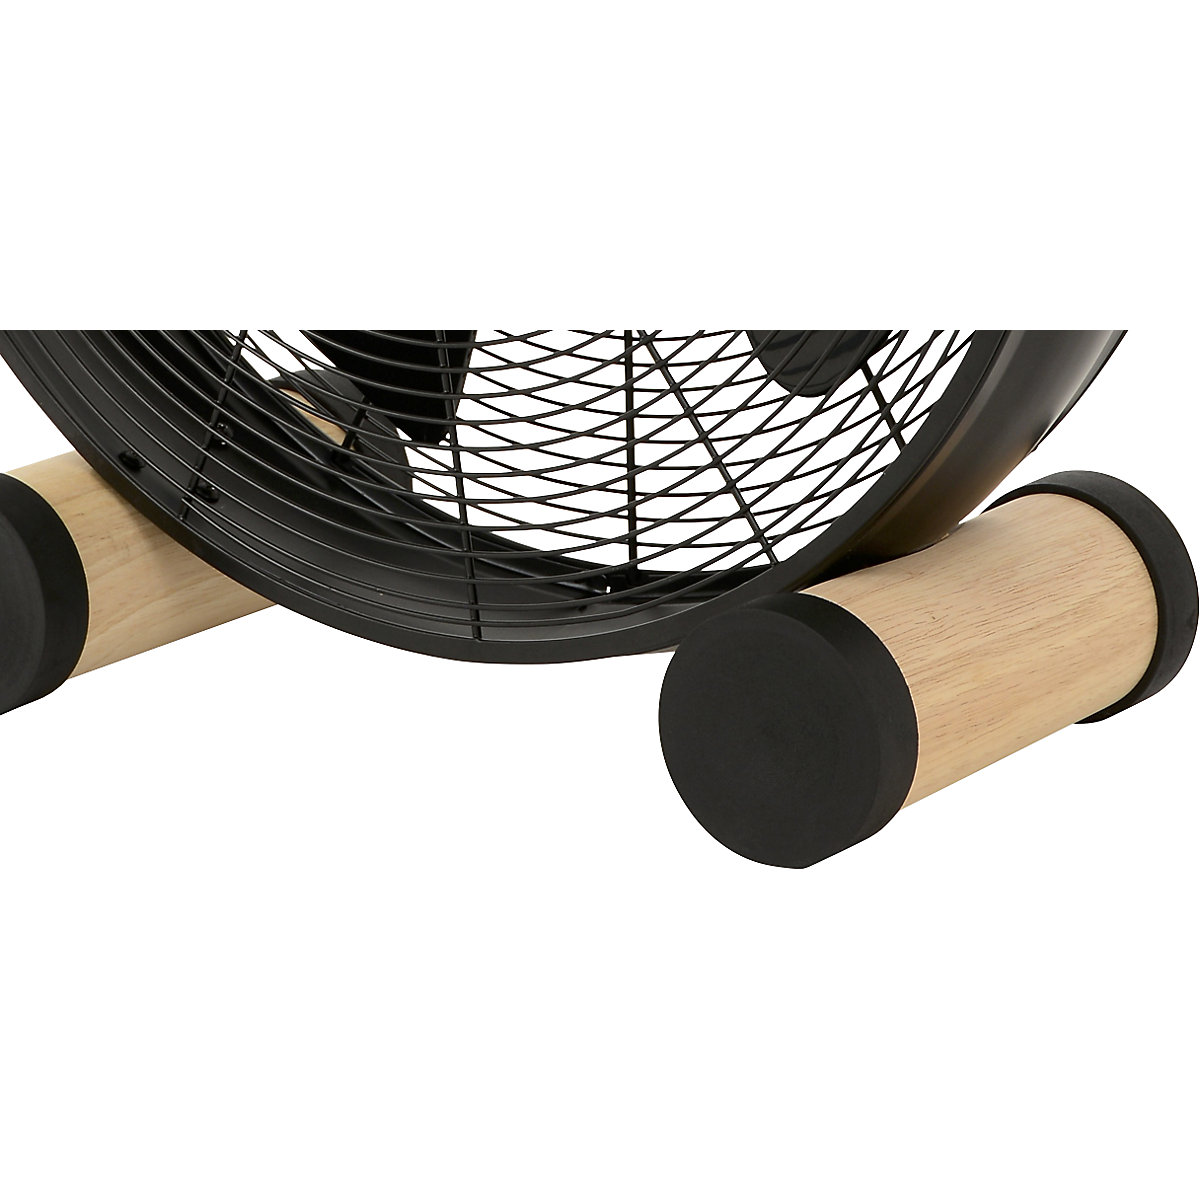 Design-vloerventilator met houten poten (Productafbeelding 3)